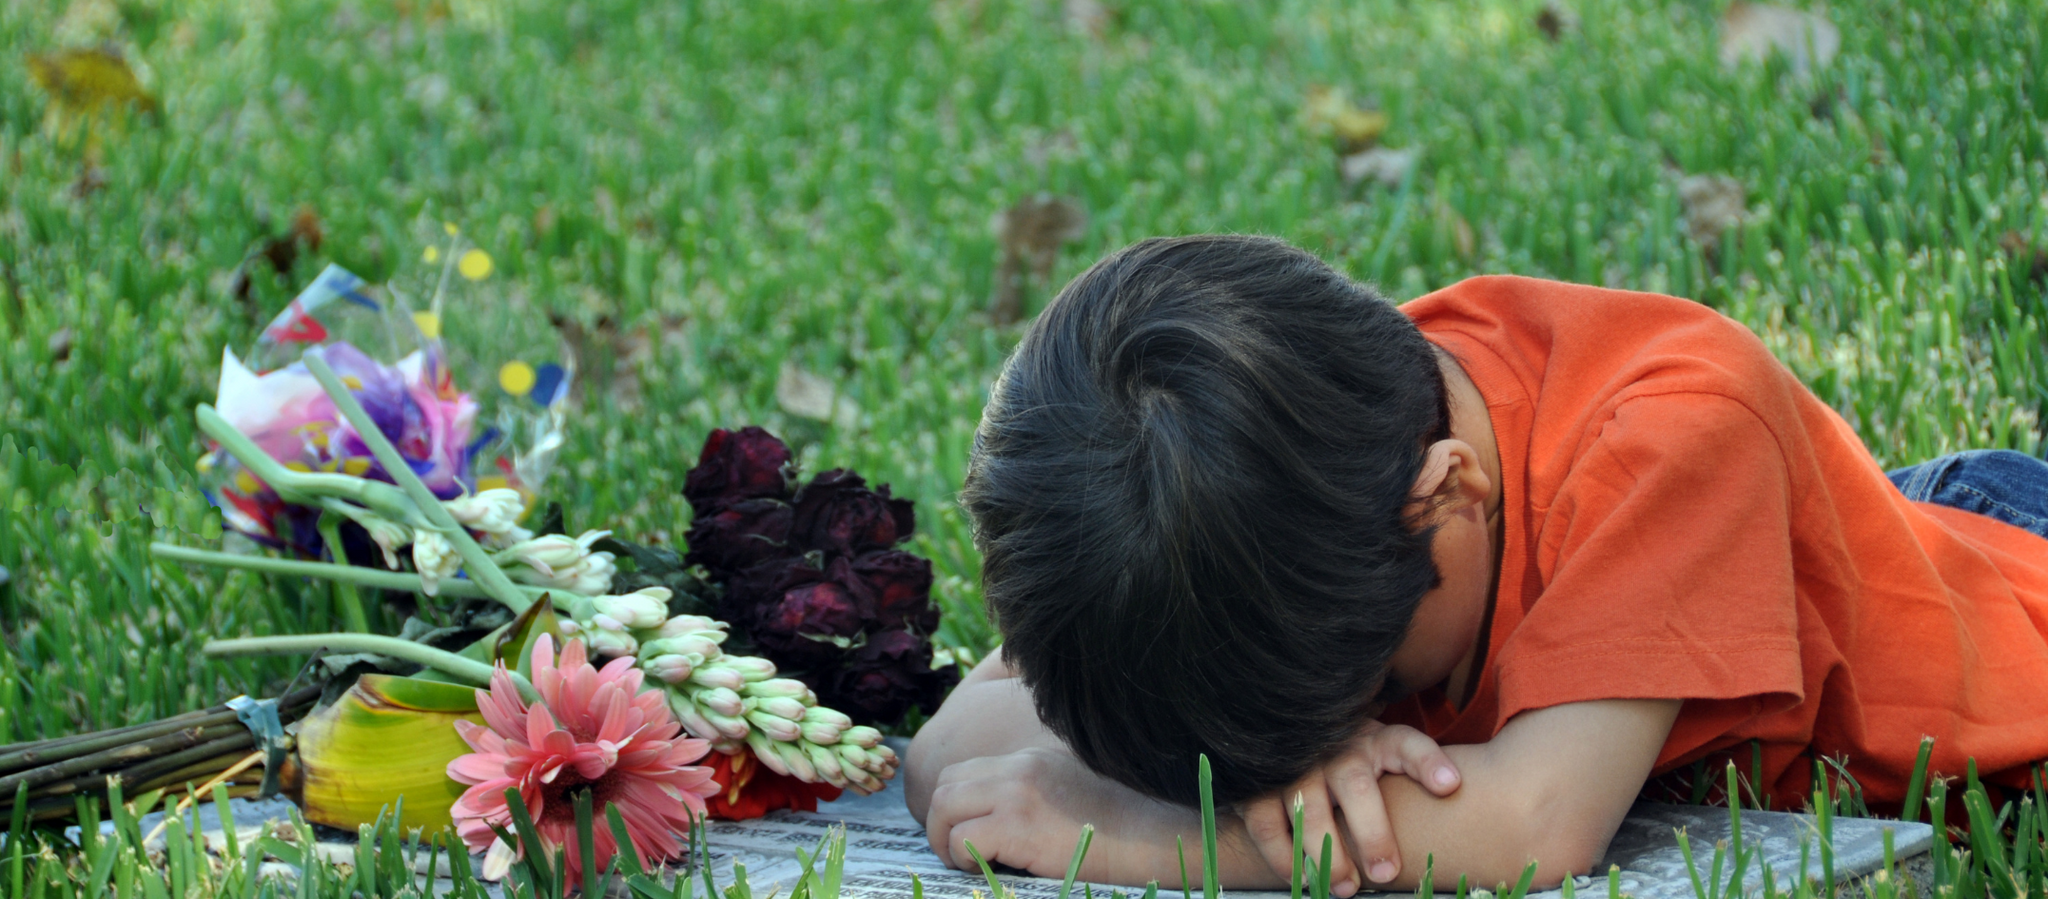 Morte e Infância: Como abordar esse assunto de forma delicada?